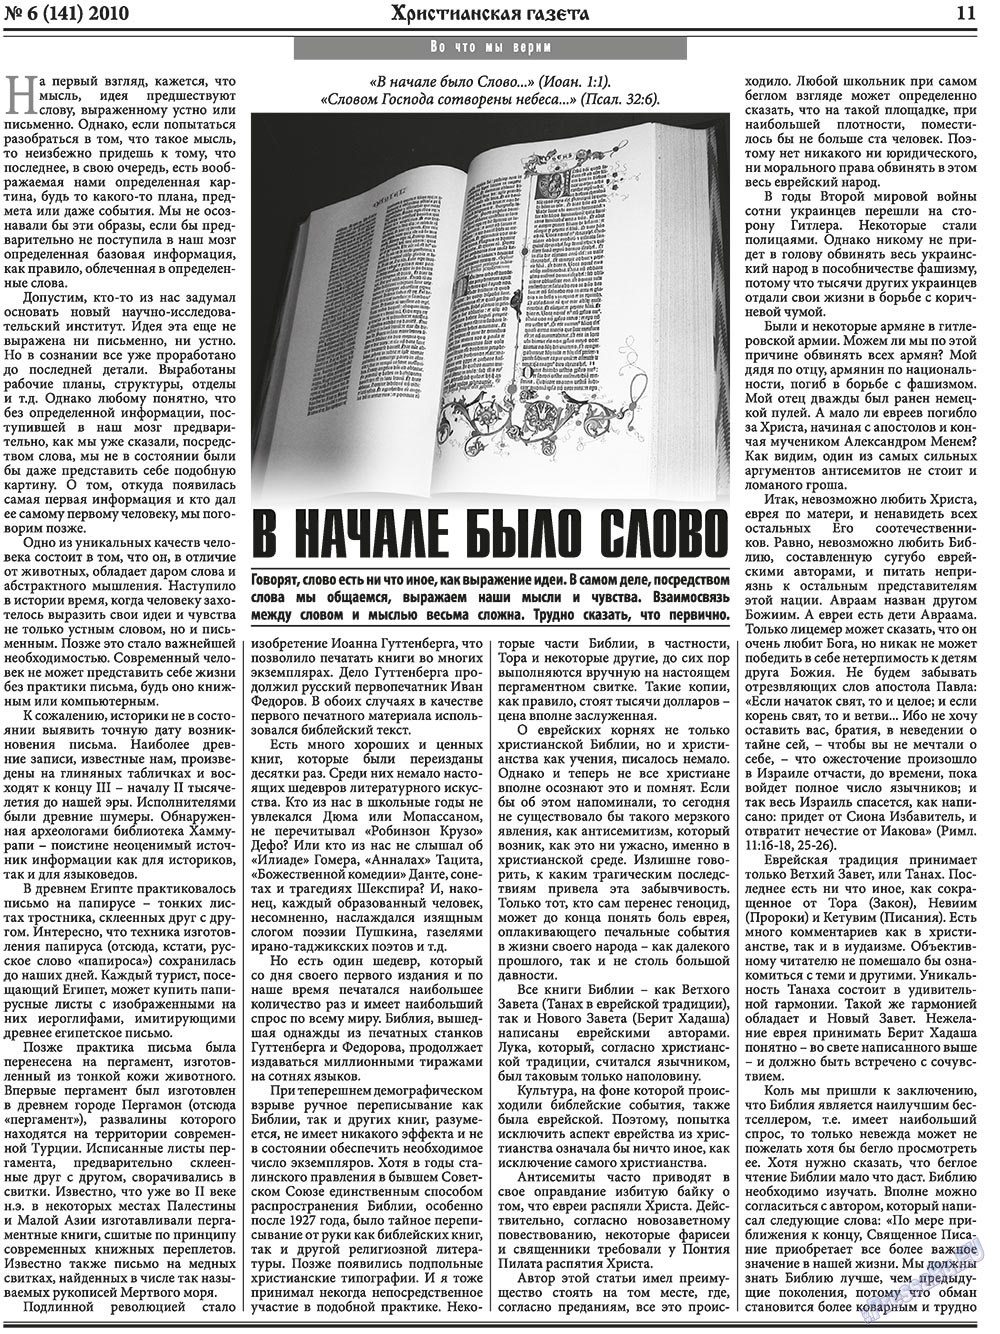 Христианская газета, газета. 2010 №6 стр.11